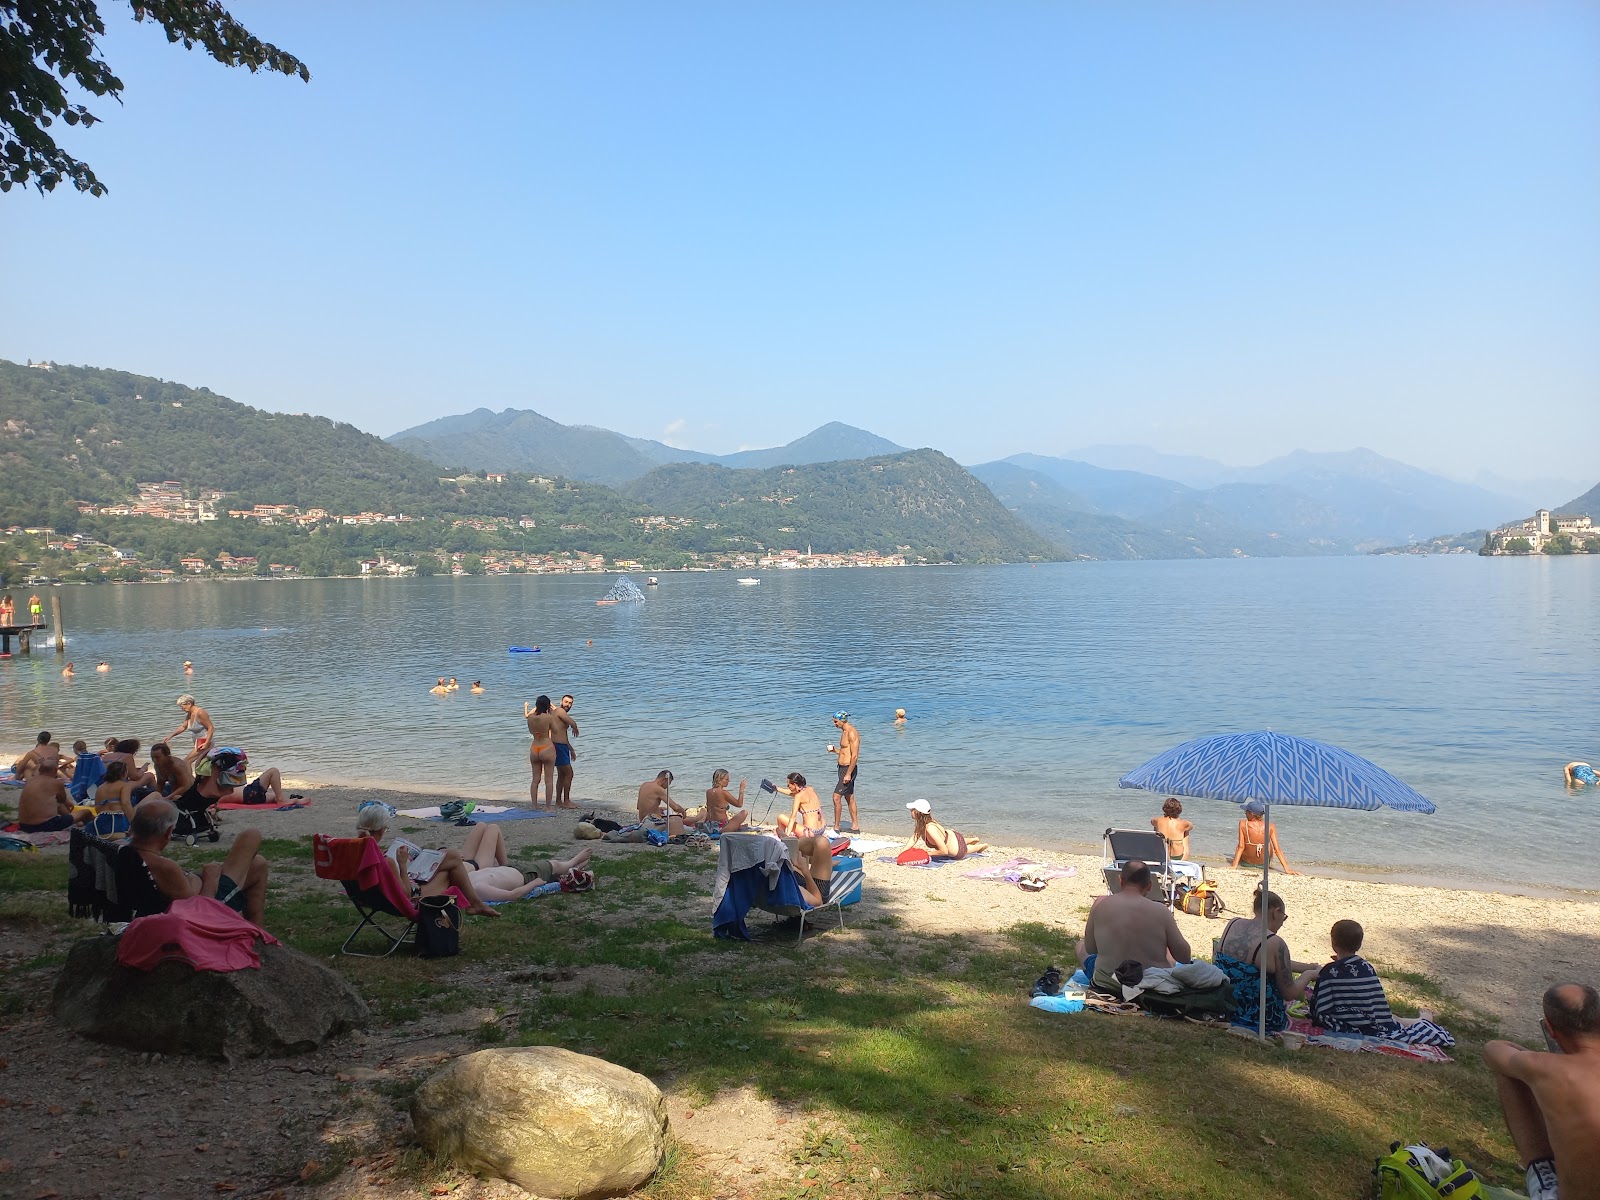 Foto de Spiaggia Prarolo - lugar popular entre los conocedores del relax